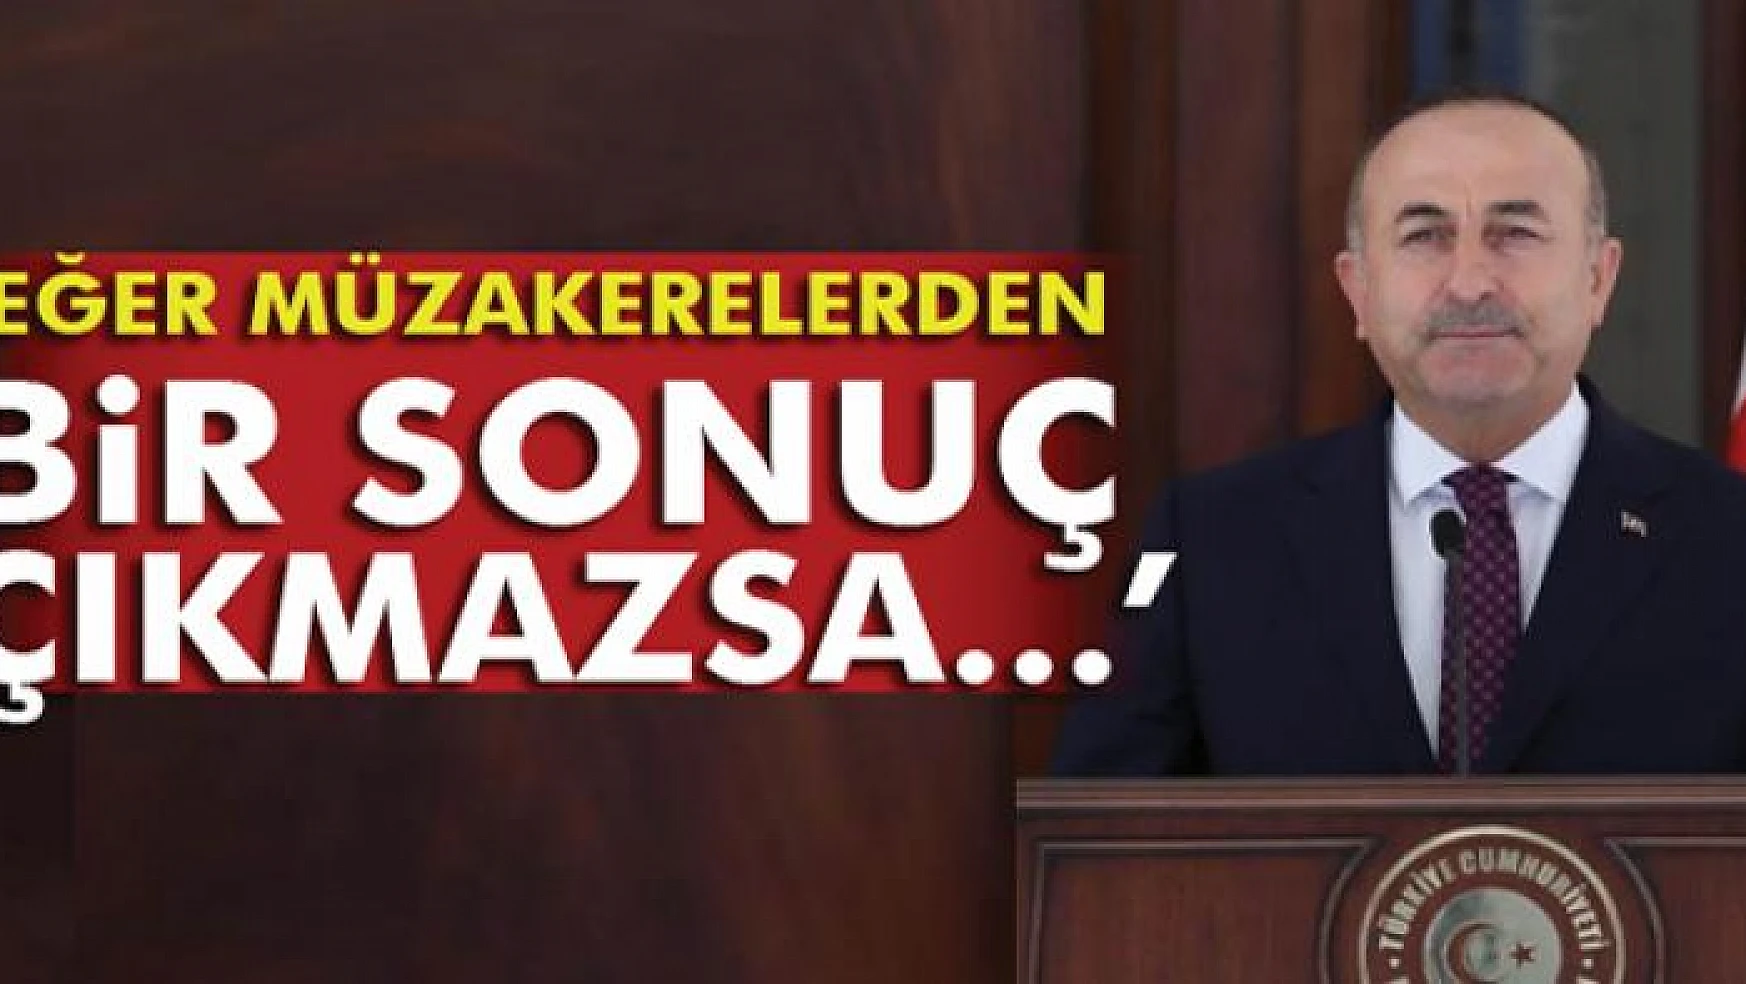 Bakan Çavuşoğlu: 'Eğer müzakerelerden bir sonuç çıkmazsa...'